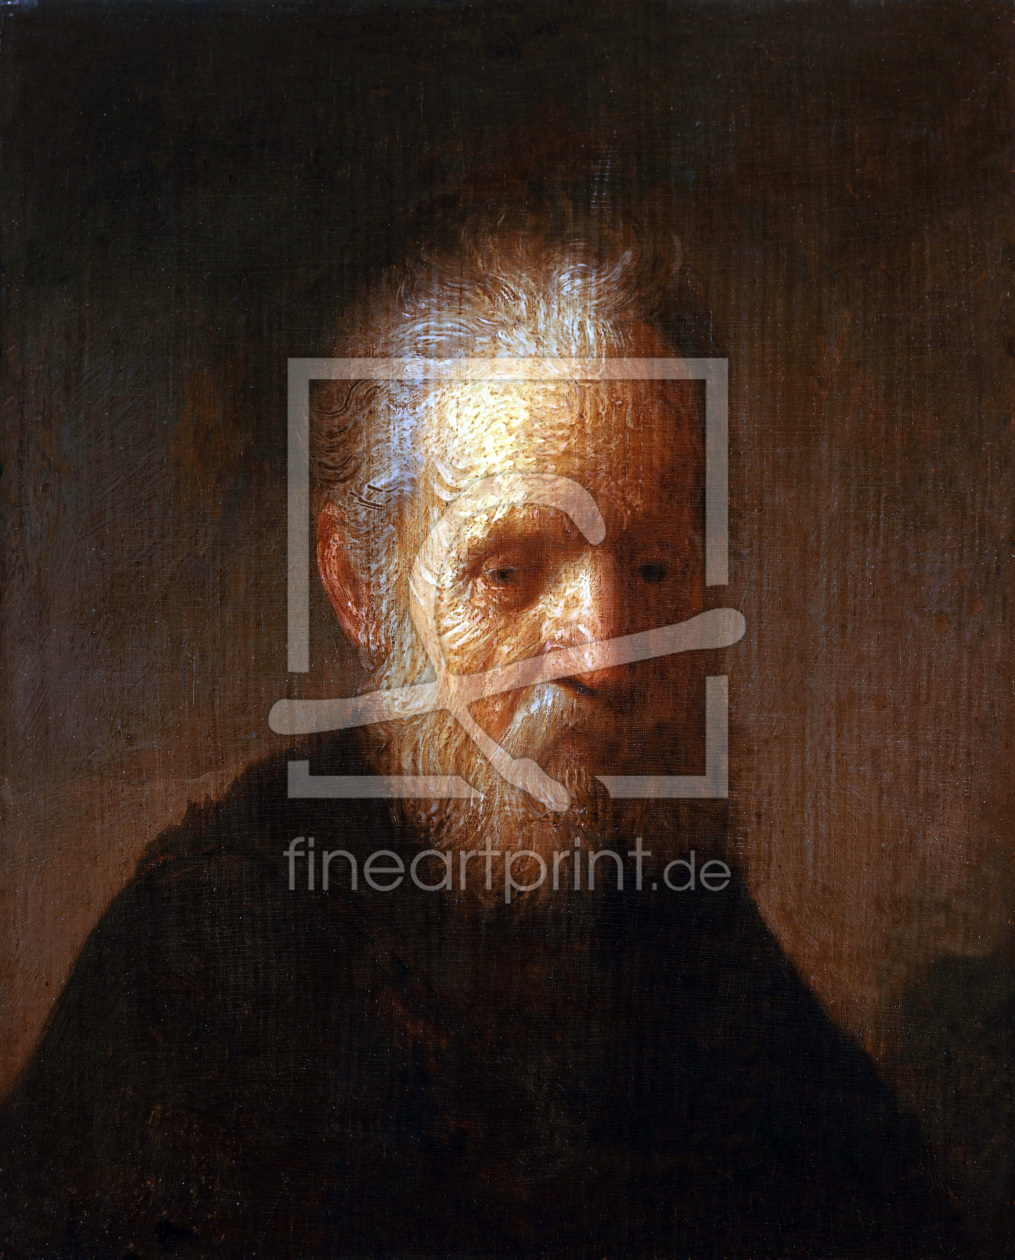 Bild-Nr.: 30007651 Rembrandt / Portrait of an old man erstellt von Rembrandt Harmenszoon van Rijn